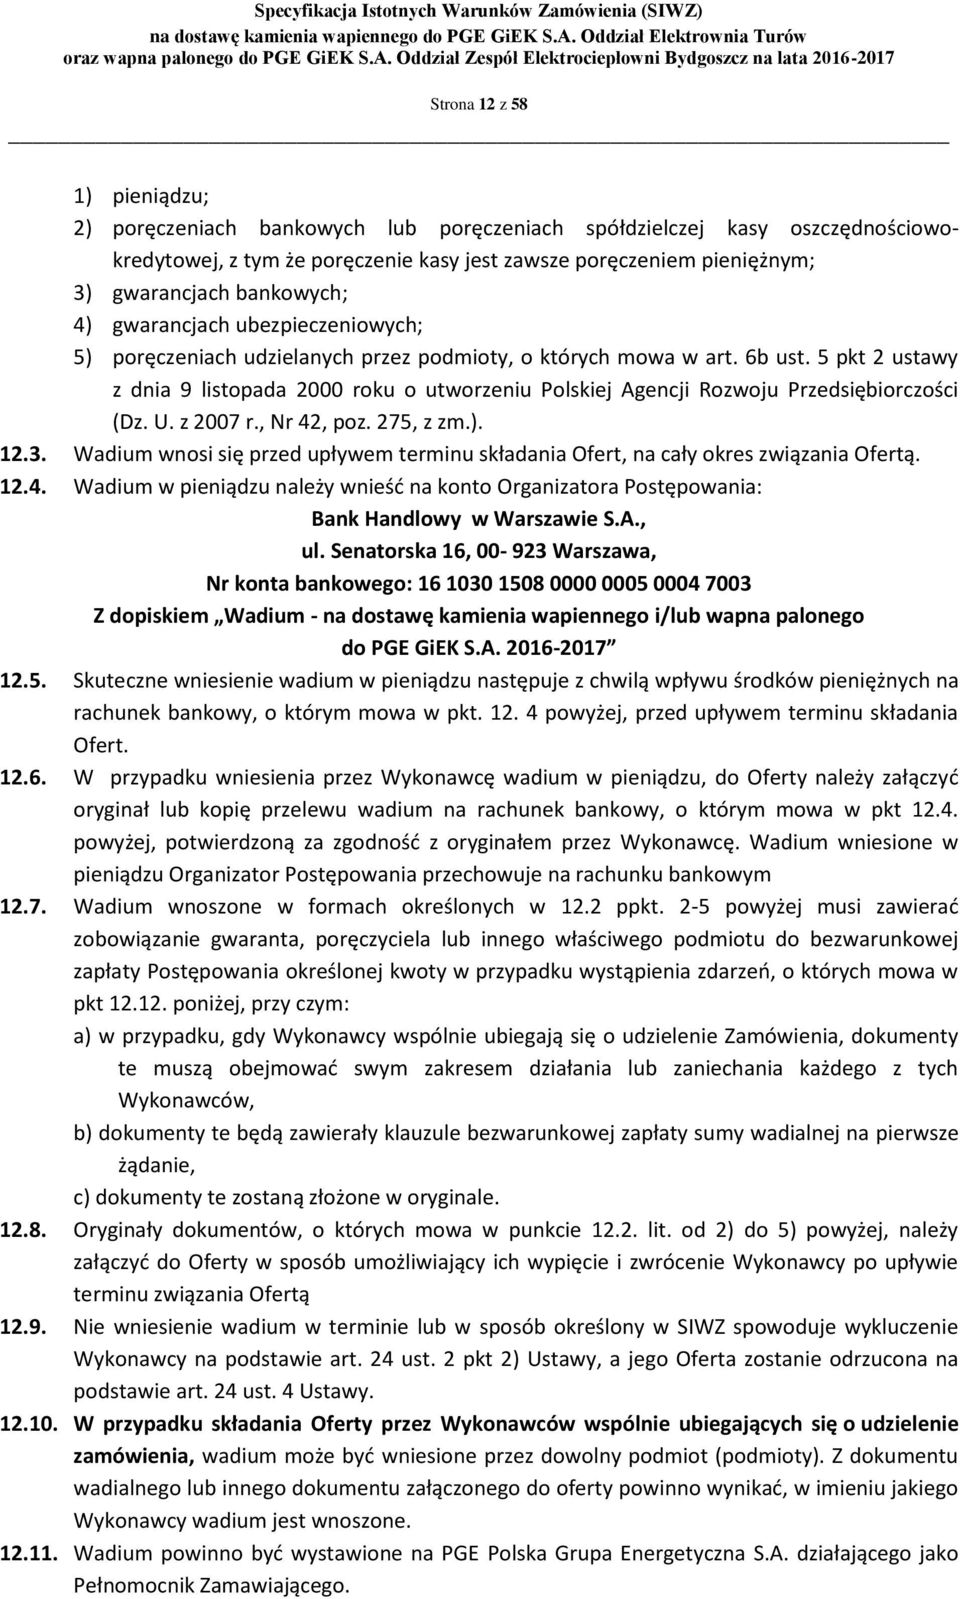 5 pkt 2 ustawy z dnia 9 listopada 2000 roku o utworzeniu Polskiej Agencji Rozwoju Przedsiębiorczości (Dz. U. z 2007 r., Nr 42, poz. 275, z zm.). 12.3.